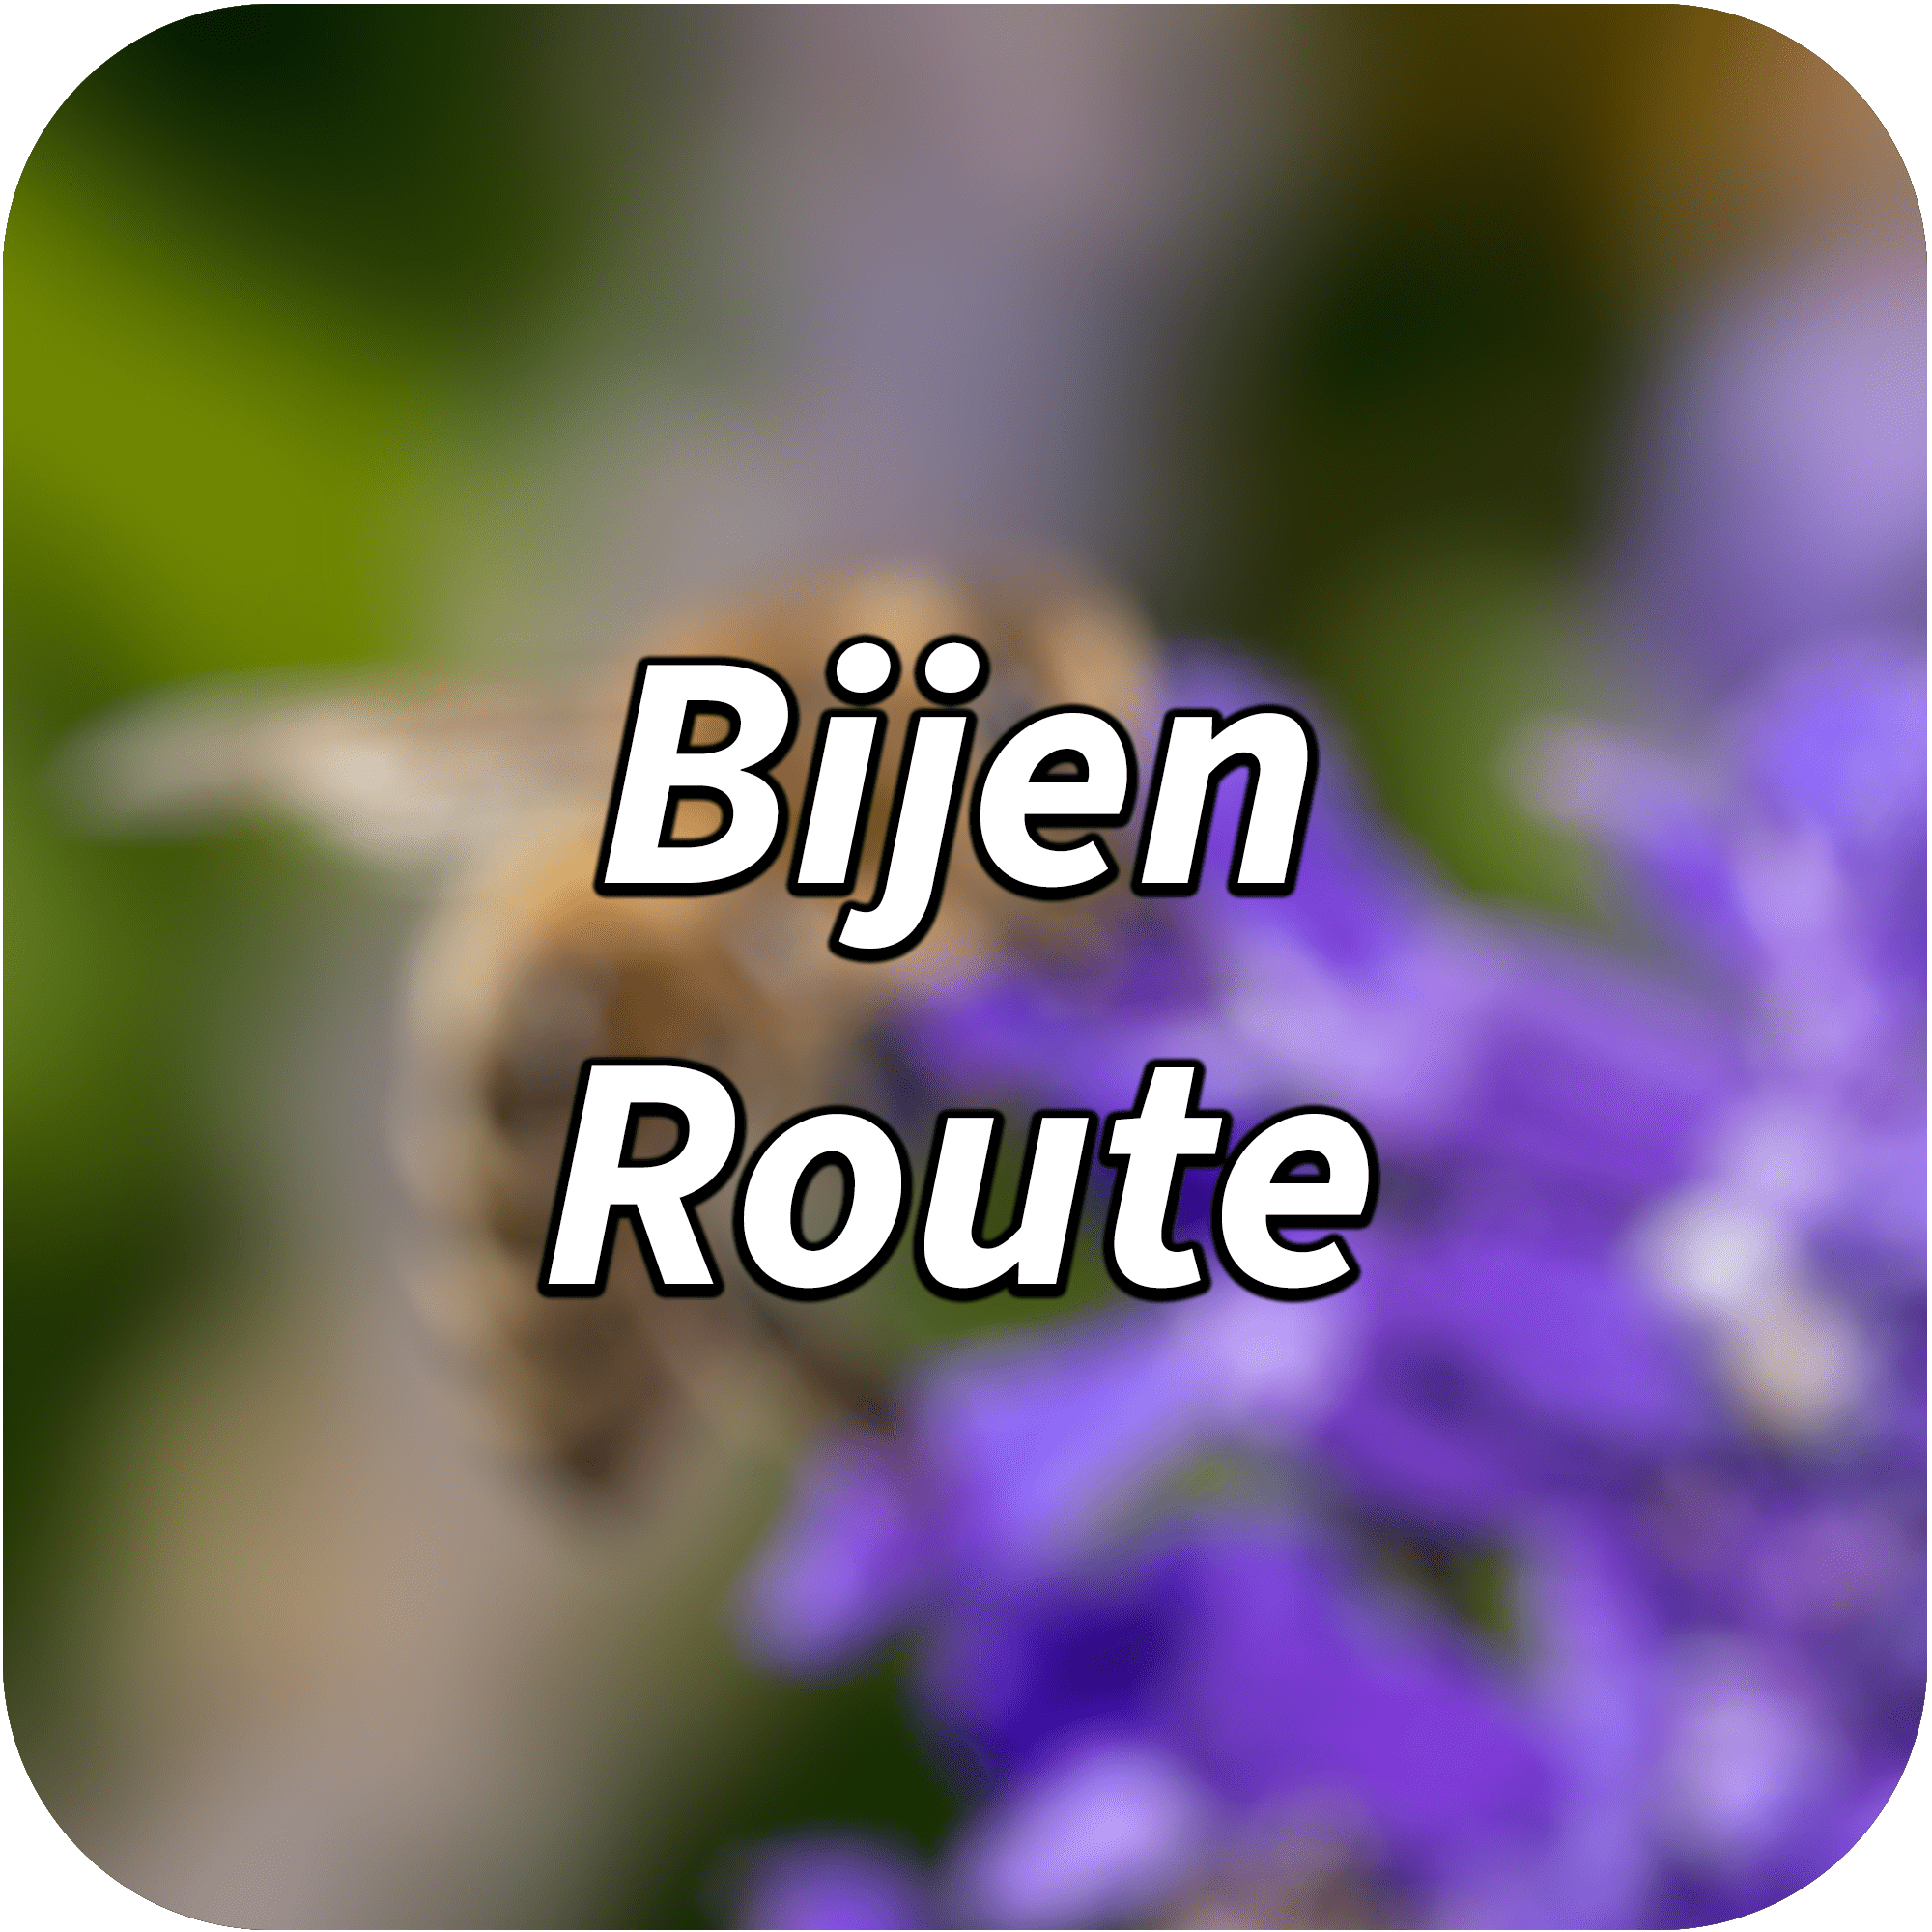 bijen-route-min